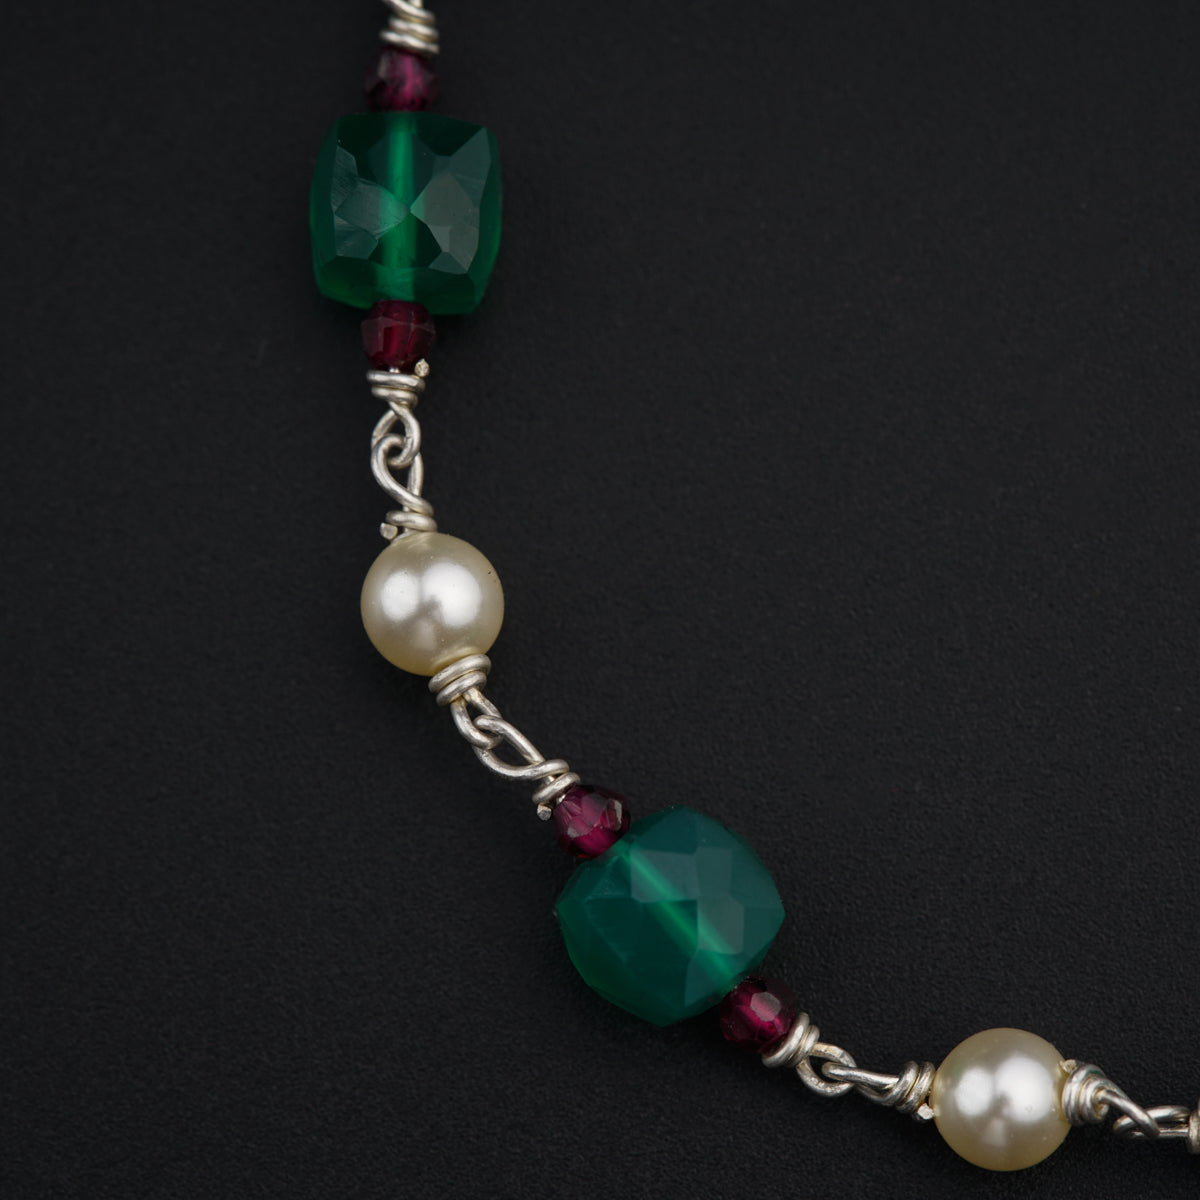 Psychic Lady' Semi-Precious Gemstone Beaded Bracelet